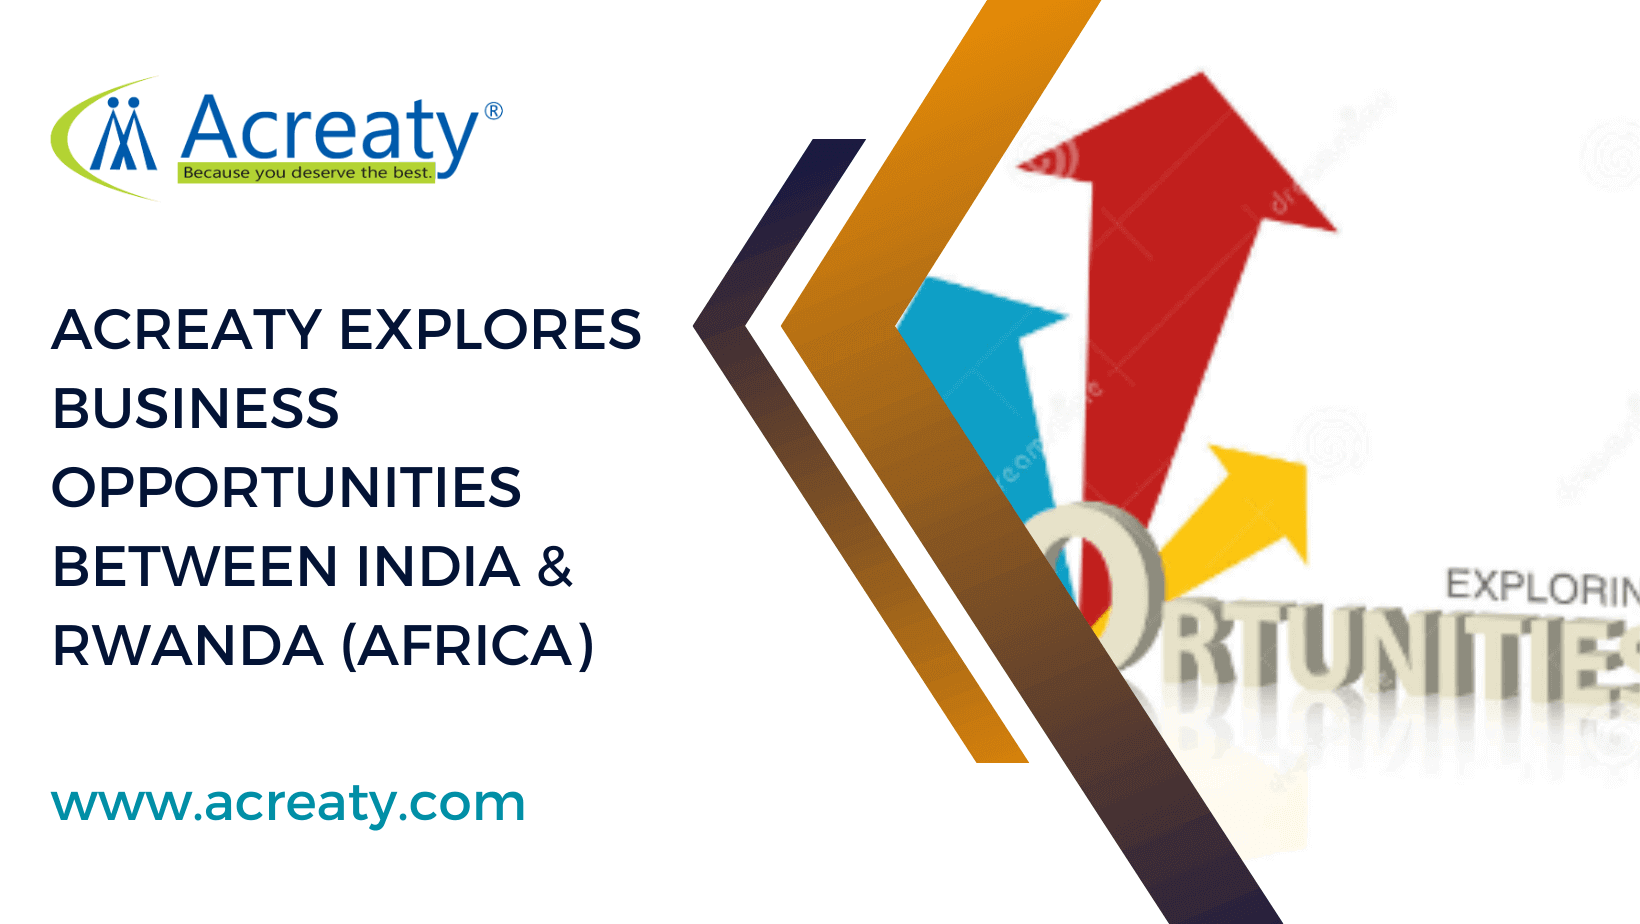 ACREATY Explores Business Opportunities between India & Rwanda (Africa)